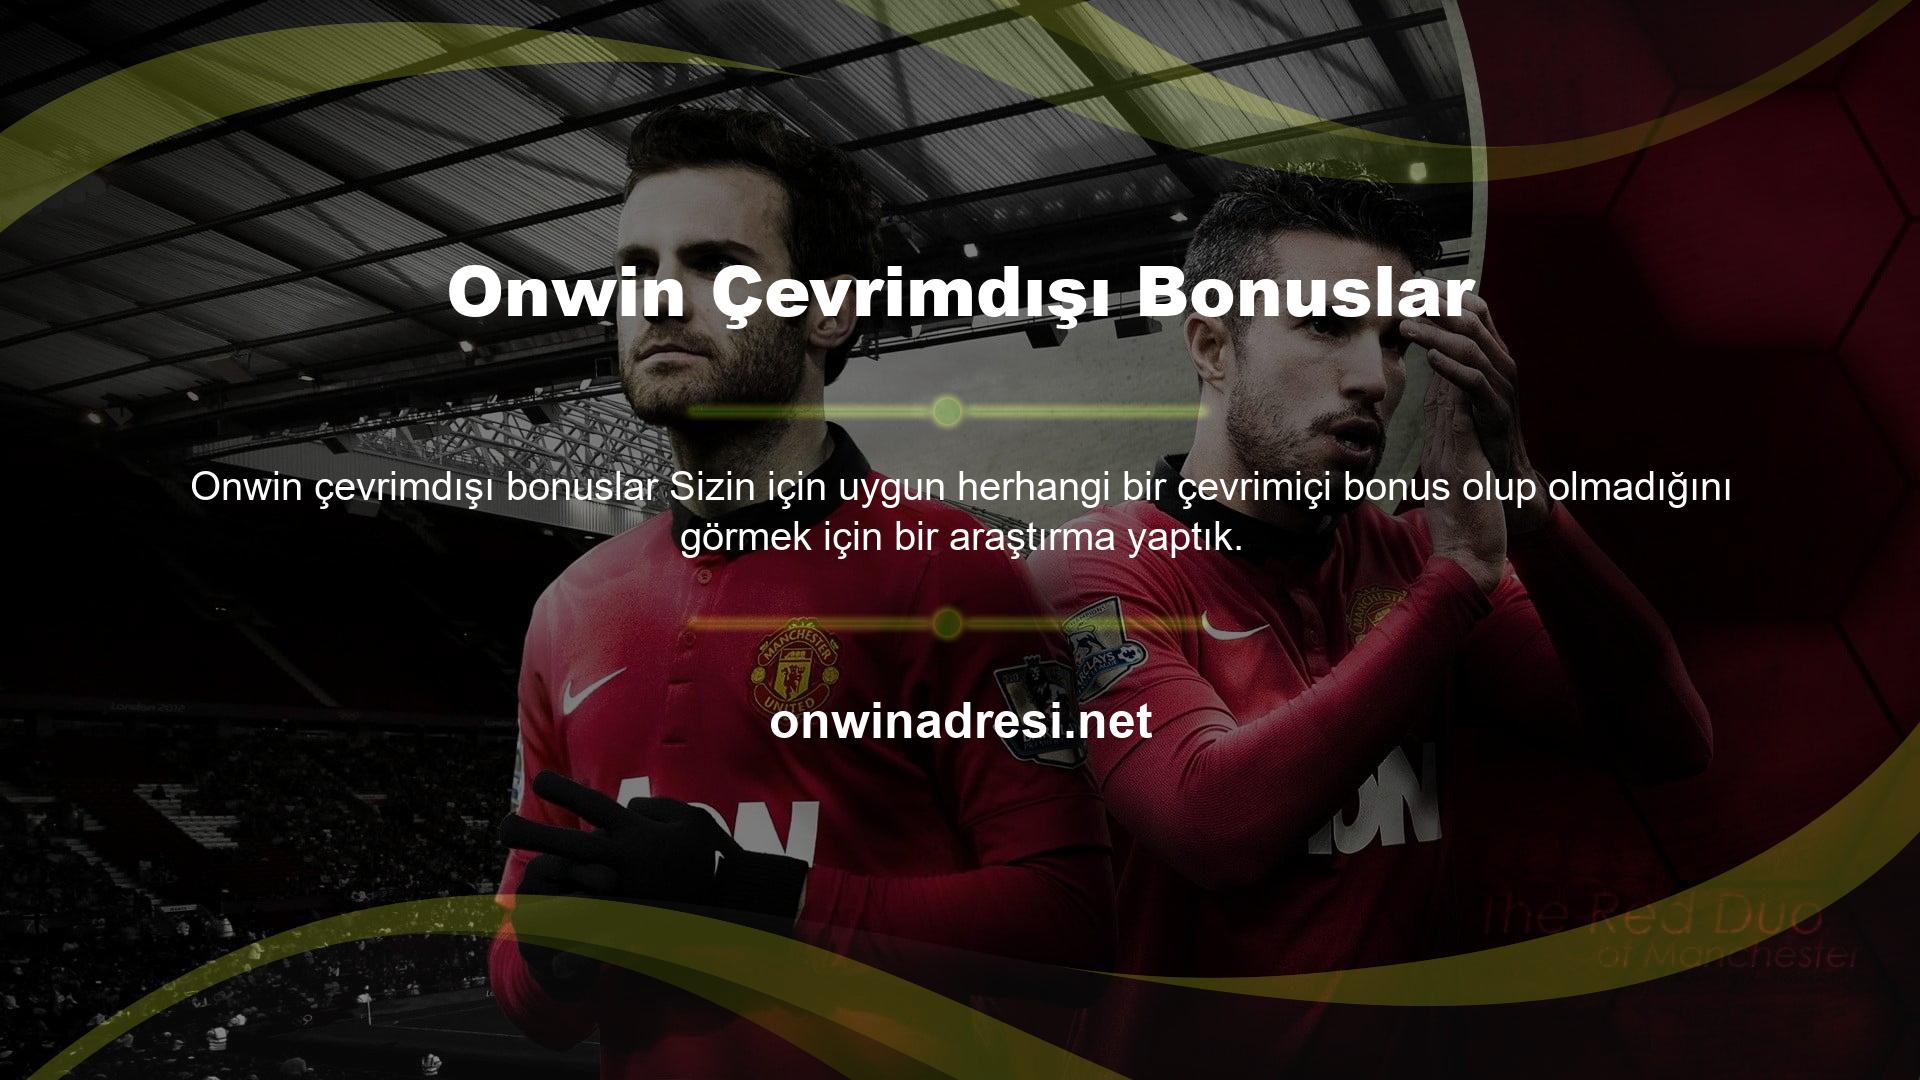 İncelememize göre, Onwin Offline Bonus yalnızca bir jeton sunuyor